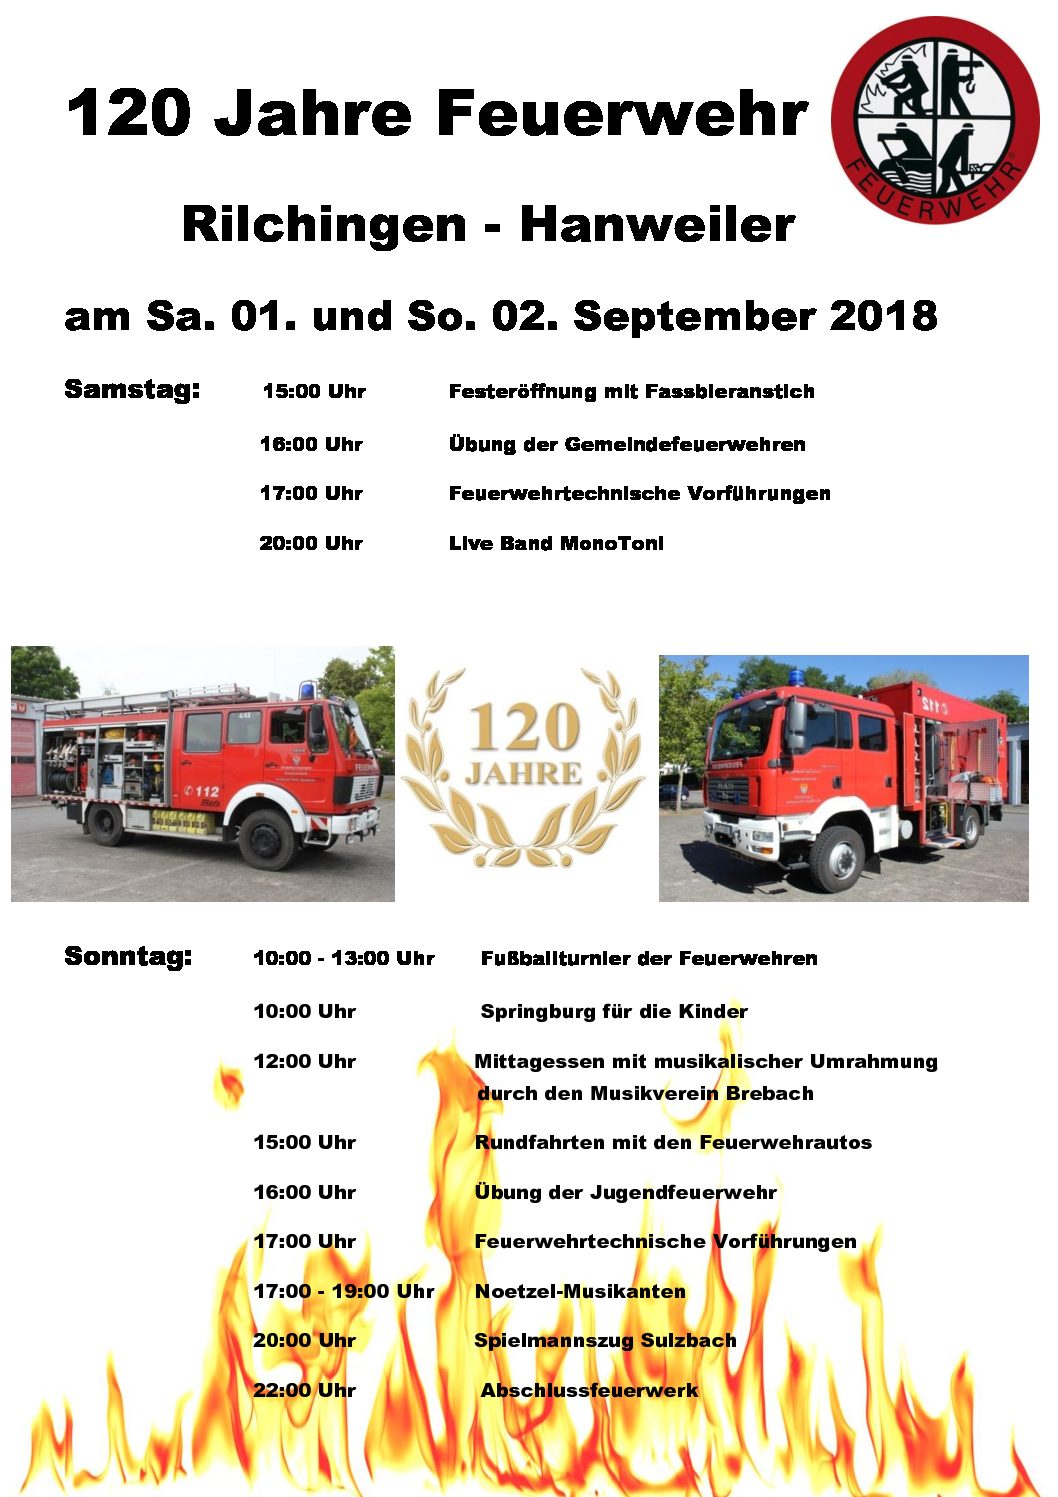 120 Jahre Feuerwehr Rilchingen-Hanweiler